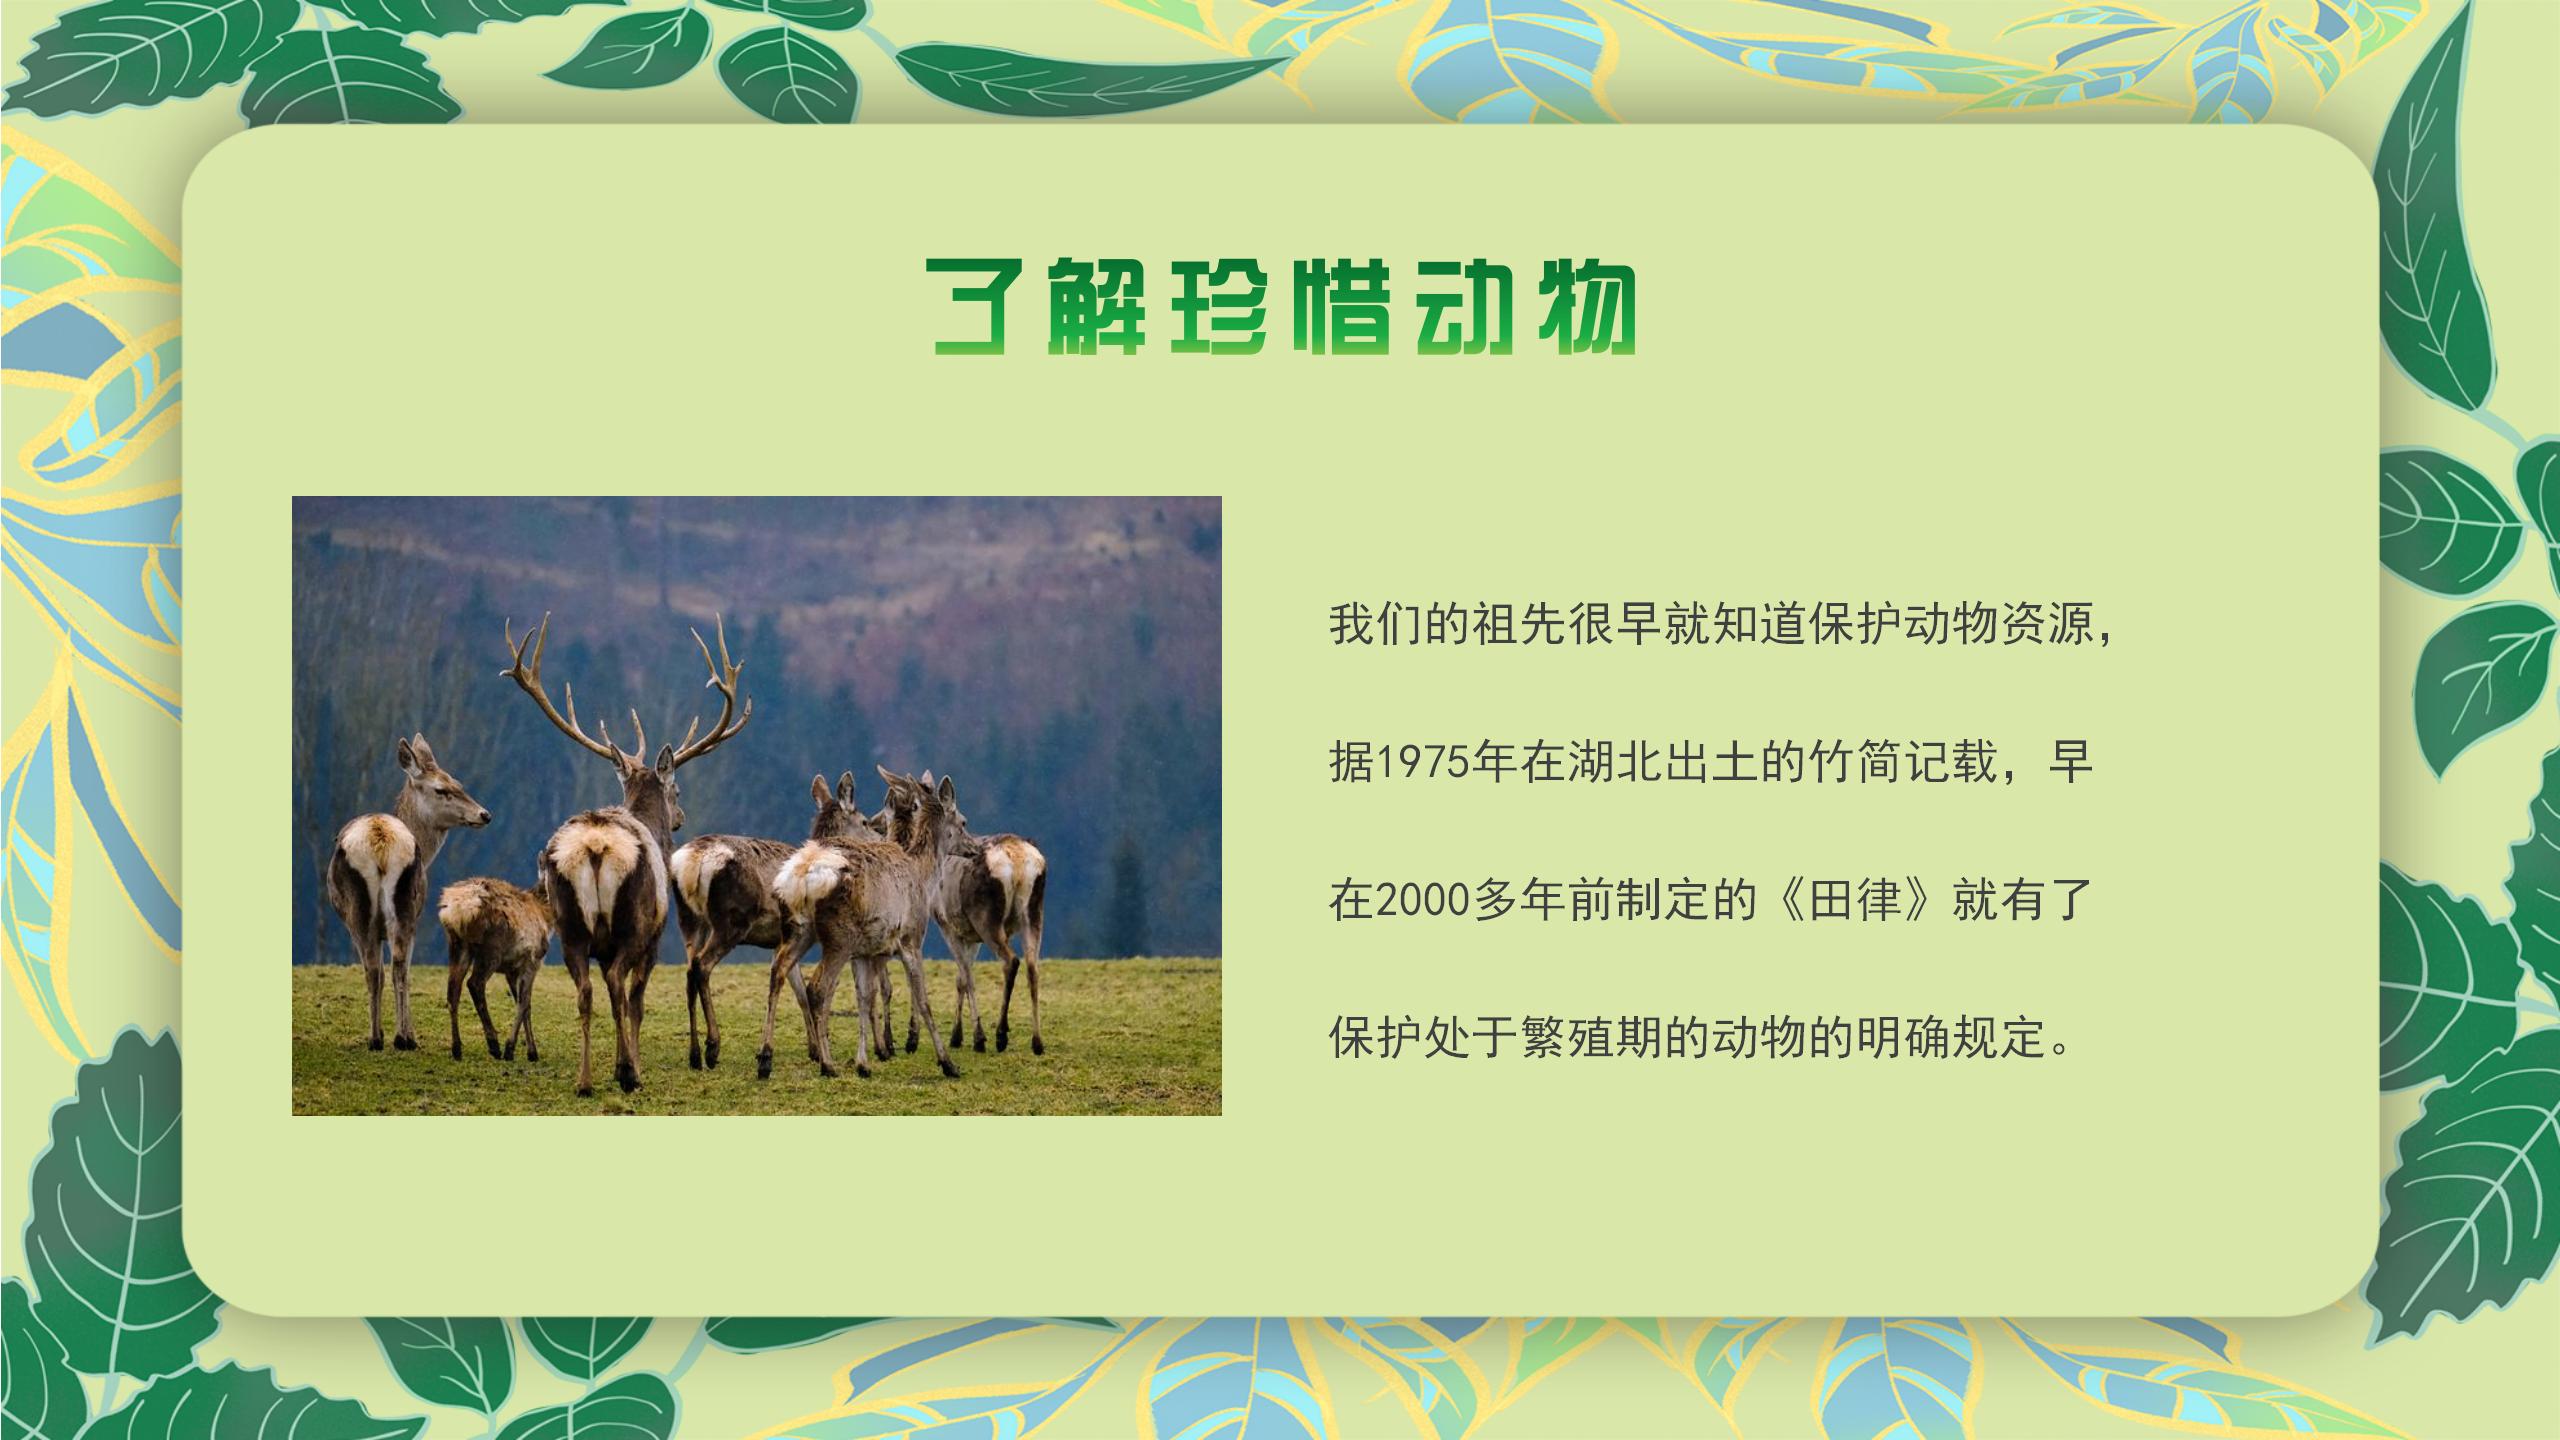 清新绿色树叶野生动物保护宣传绿色环保主题PPT模板